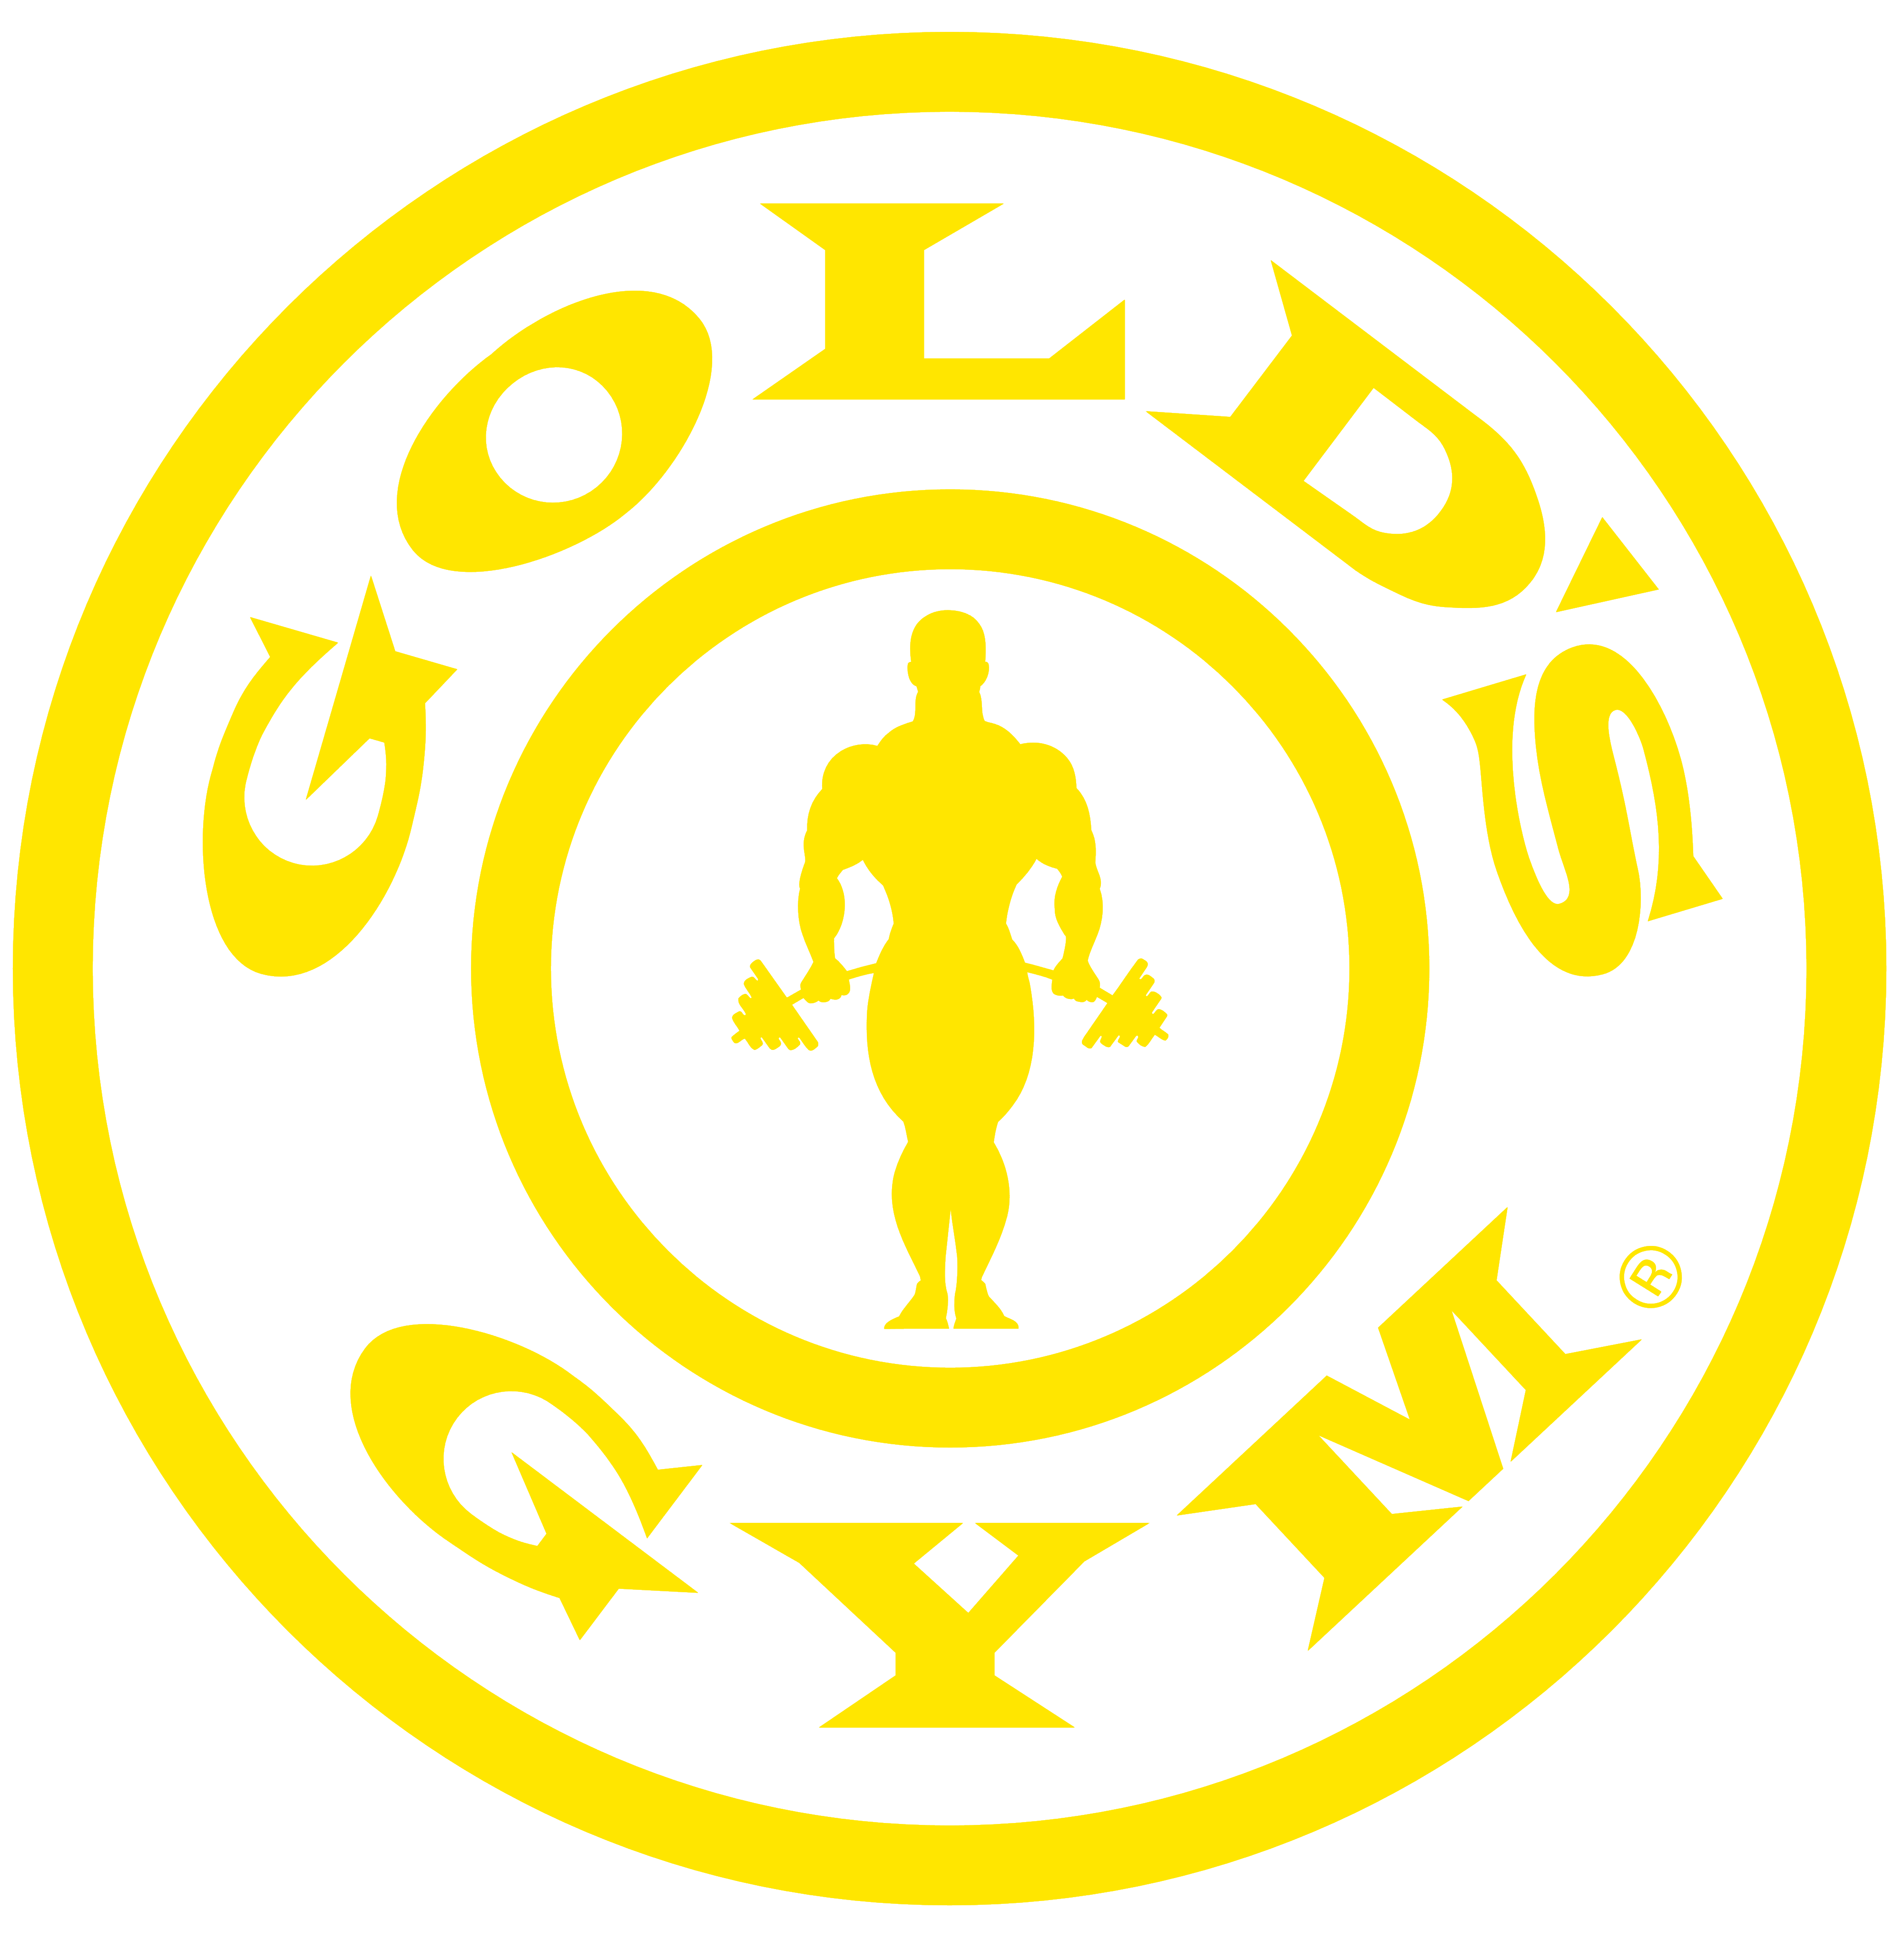 Gold’s Gym logo, logotype